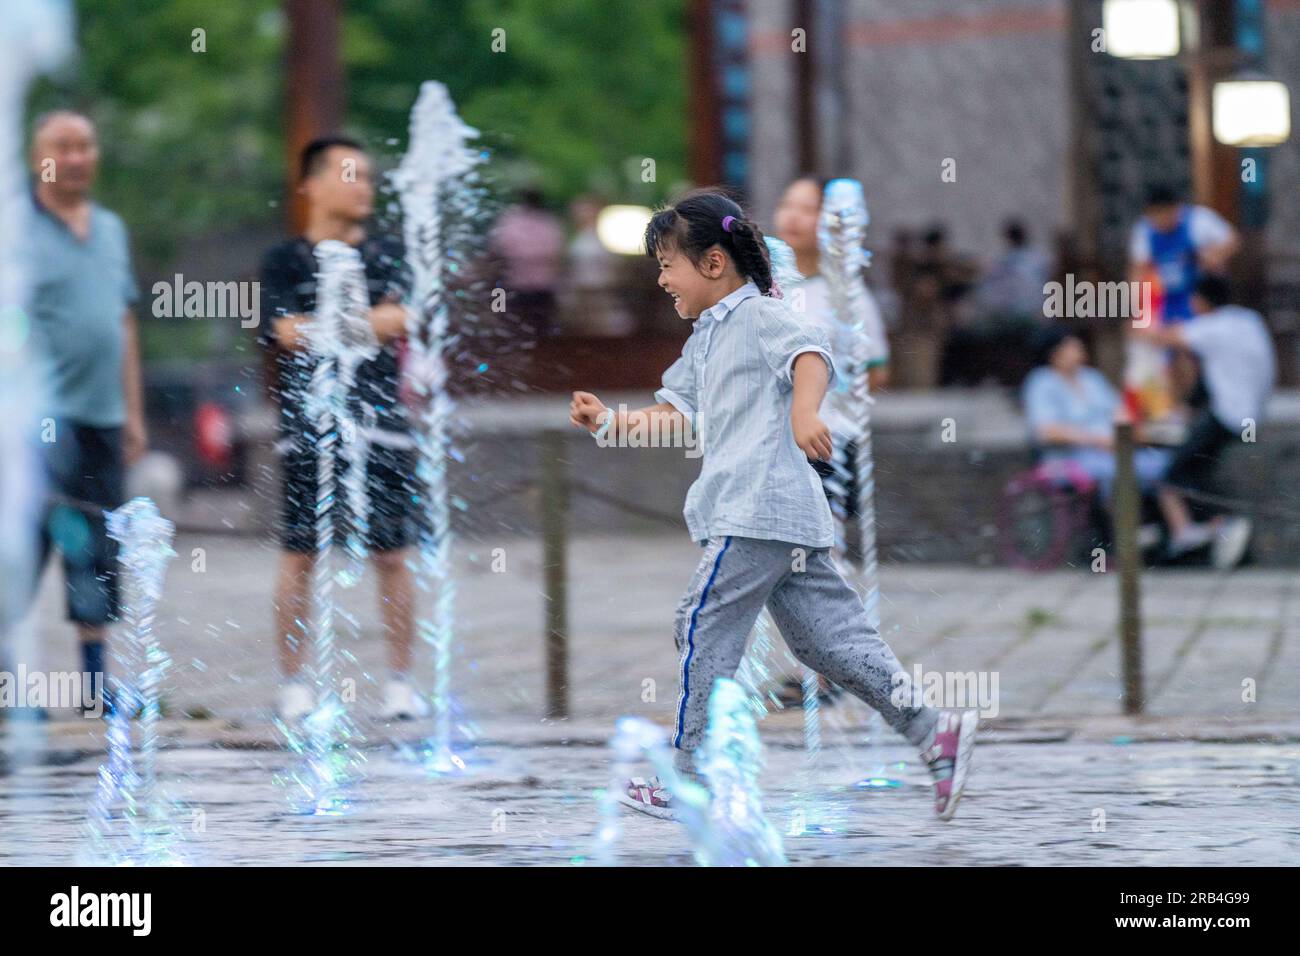 HEFEI, CHINA - 7. JULI 2023 - Kinder spielen mit Wasser, um sich an einem Brunnen auf einem Platz in Hefei, Provinz Anhui, China, abzukühlen, 7. Juli 2023. Stockfoto